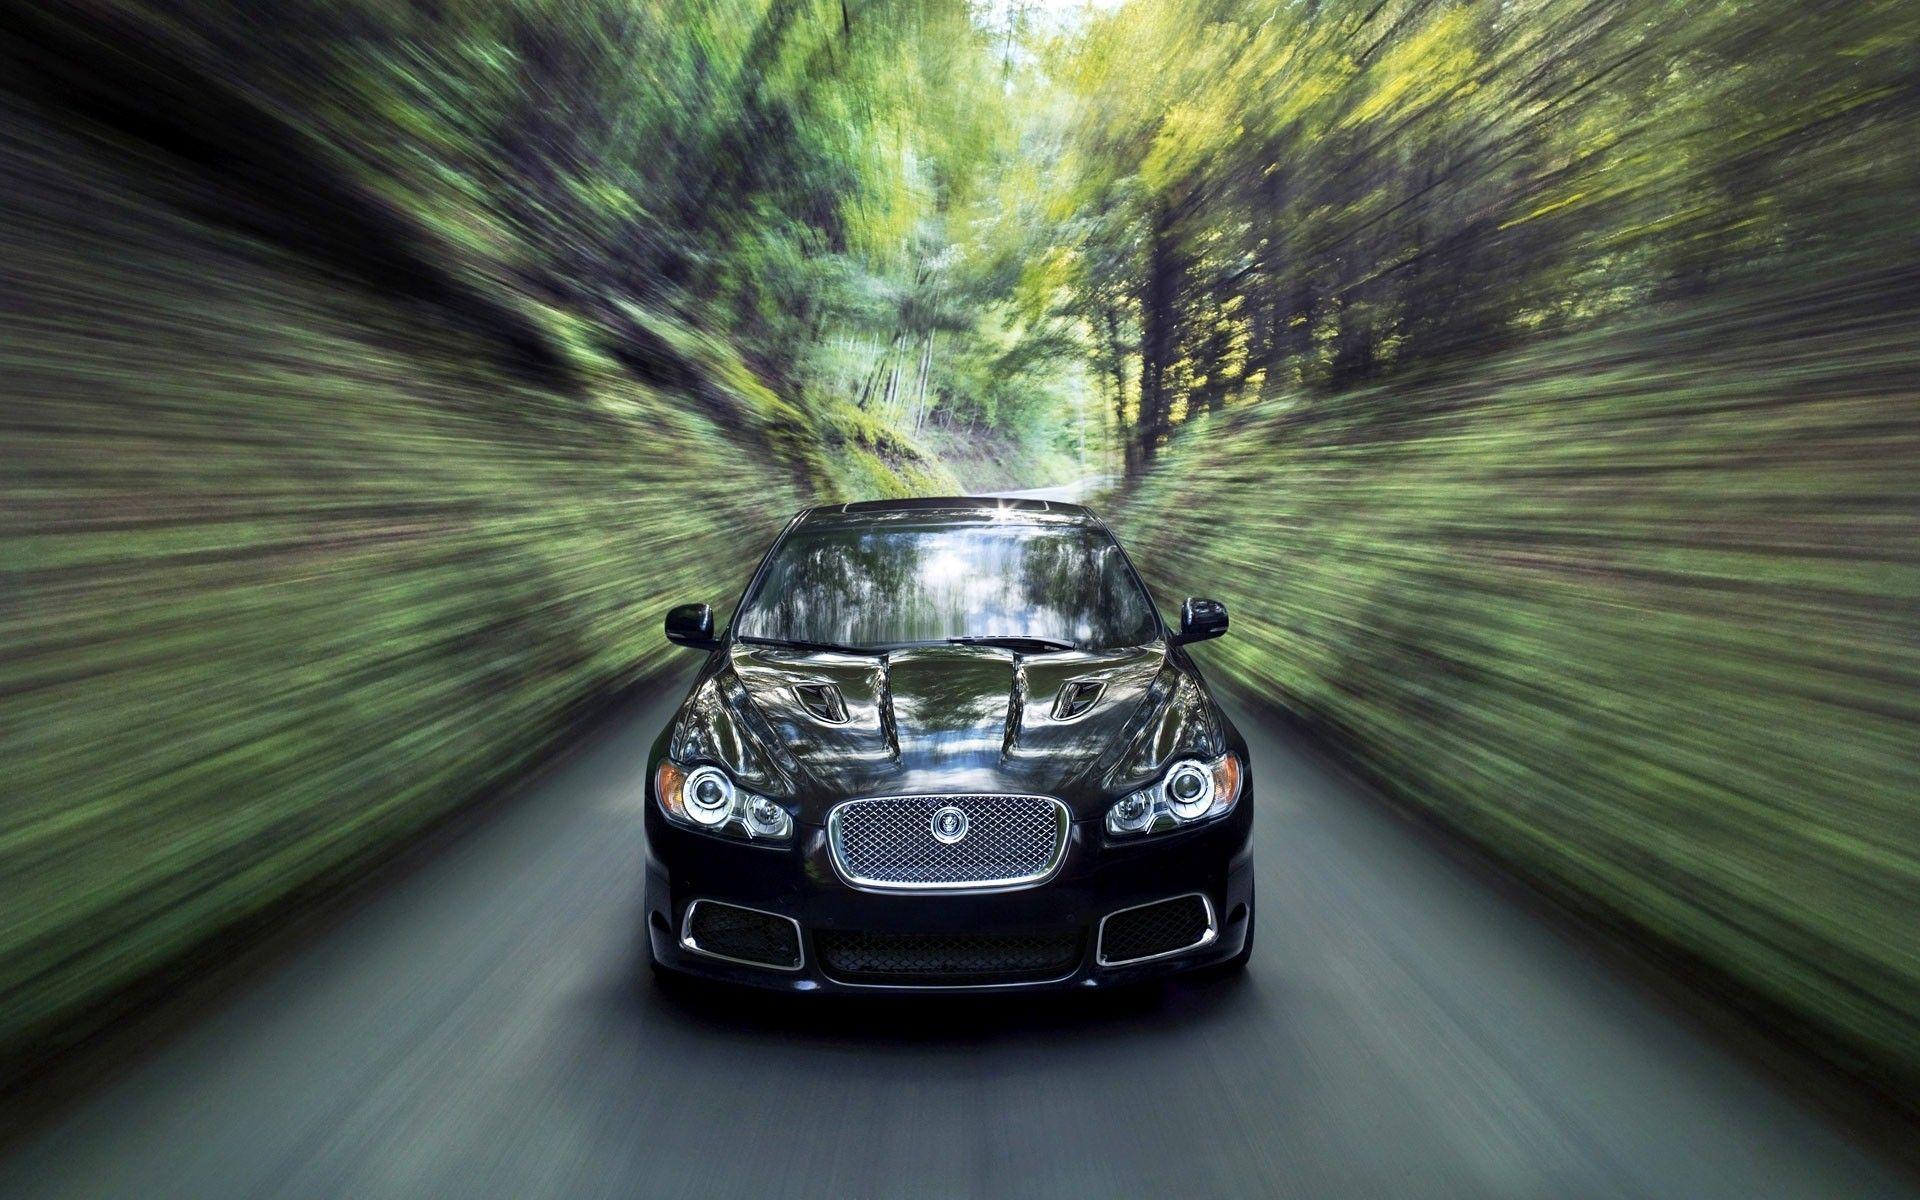 Best Black Jaguar Car HD Wallpaper High Resolution Widescreen New